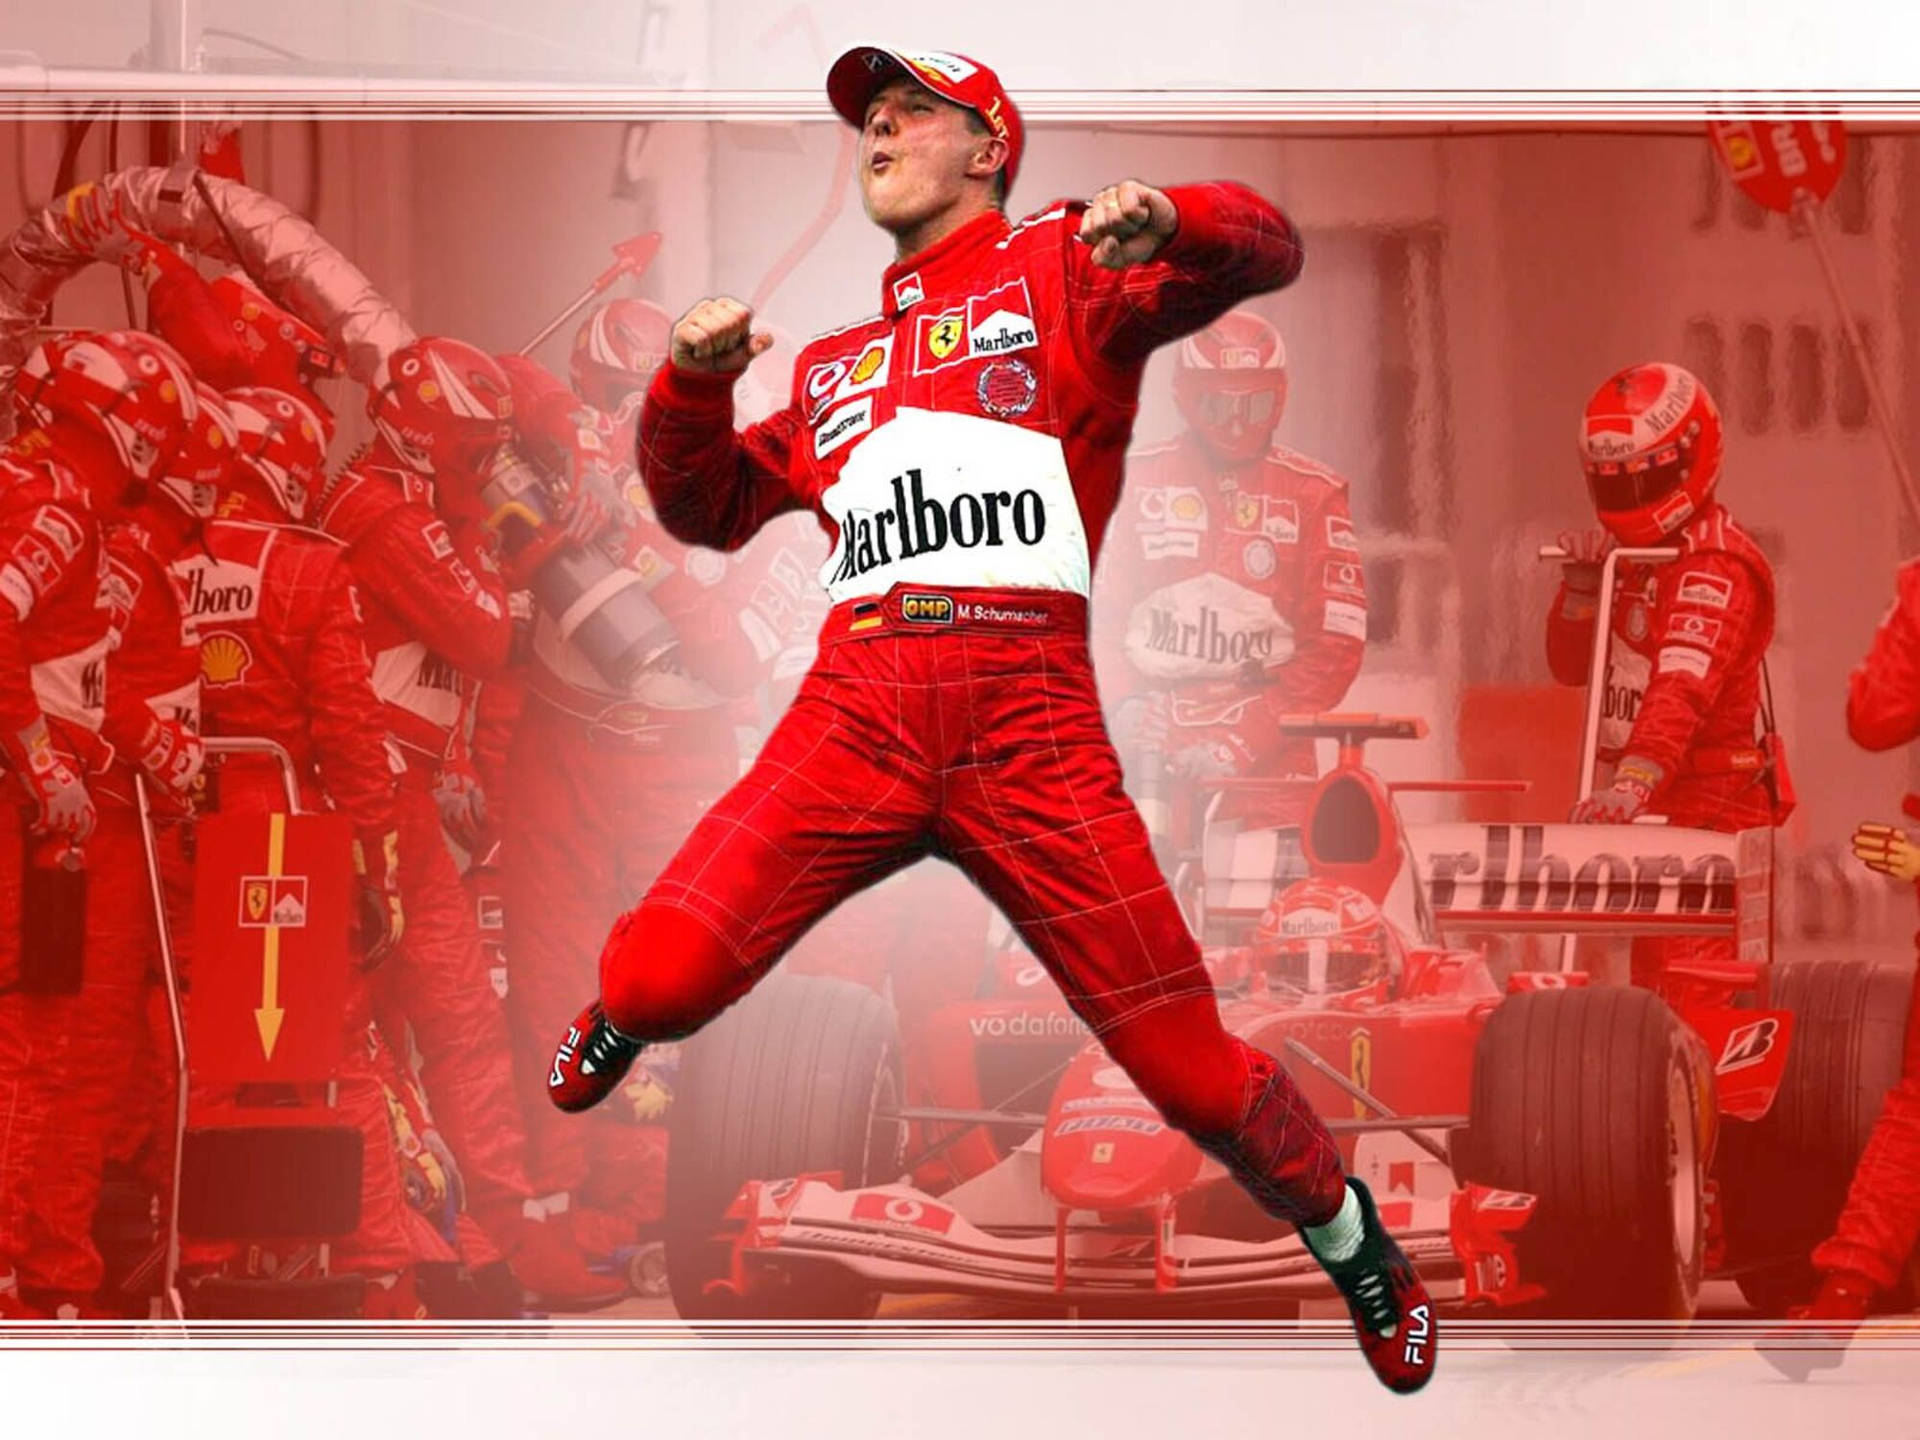 Michael Schumacher Jumping In Excitement Background